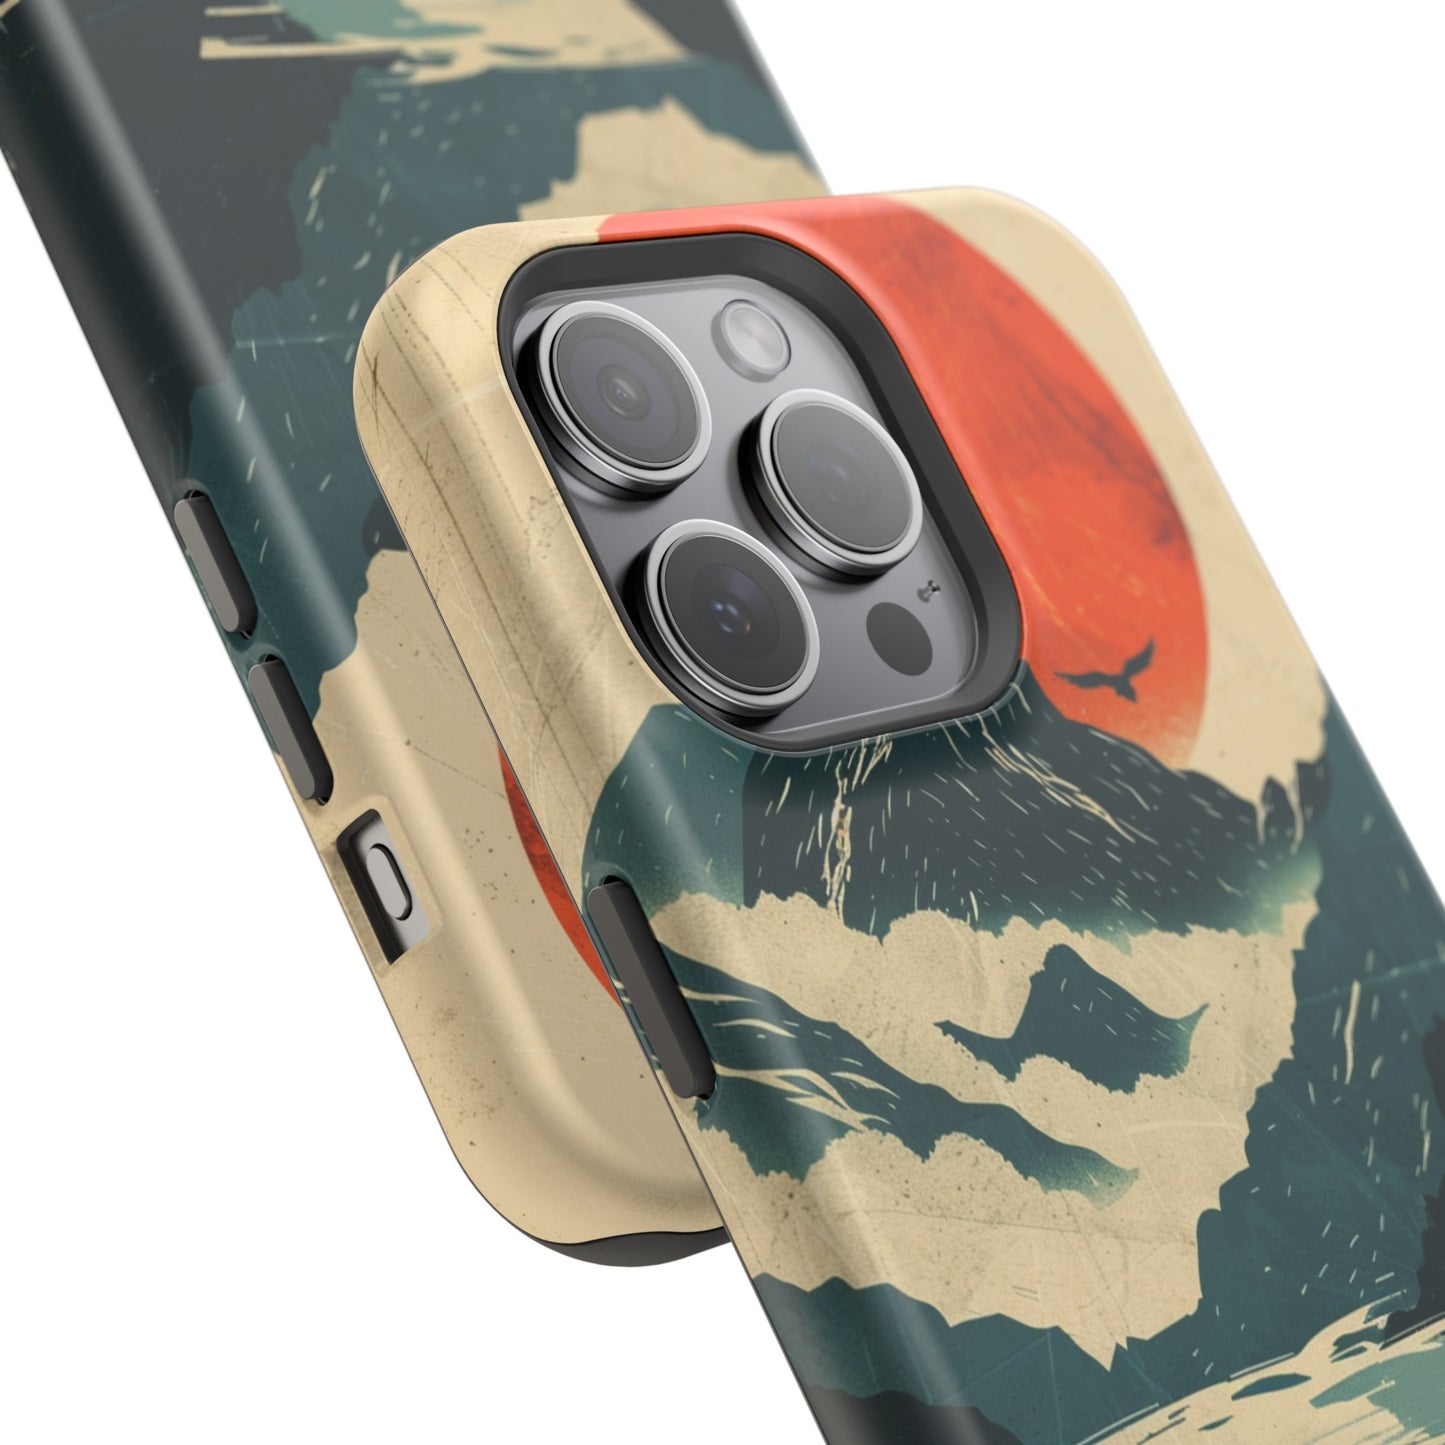 Retro iPhone Case Mountain Sunset Lake Reflection MagSafe Phone Case